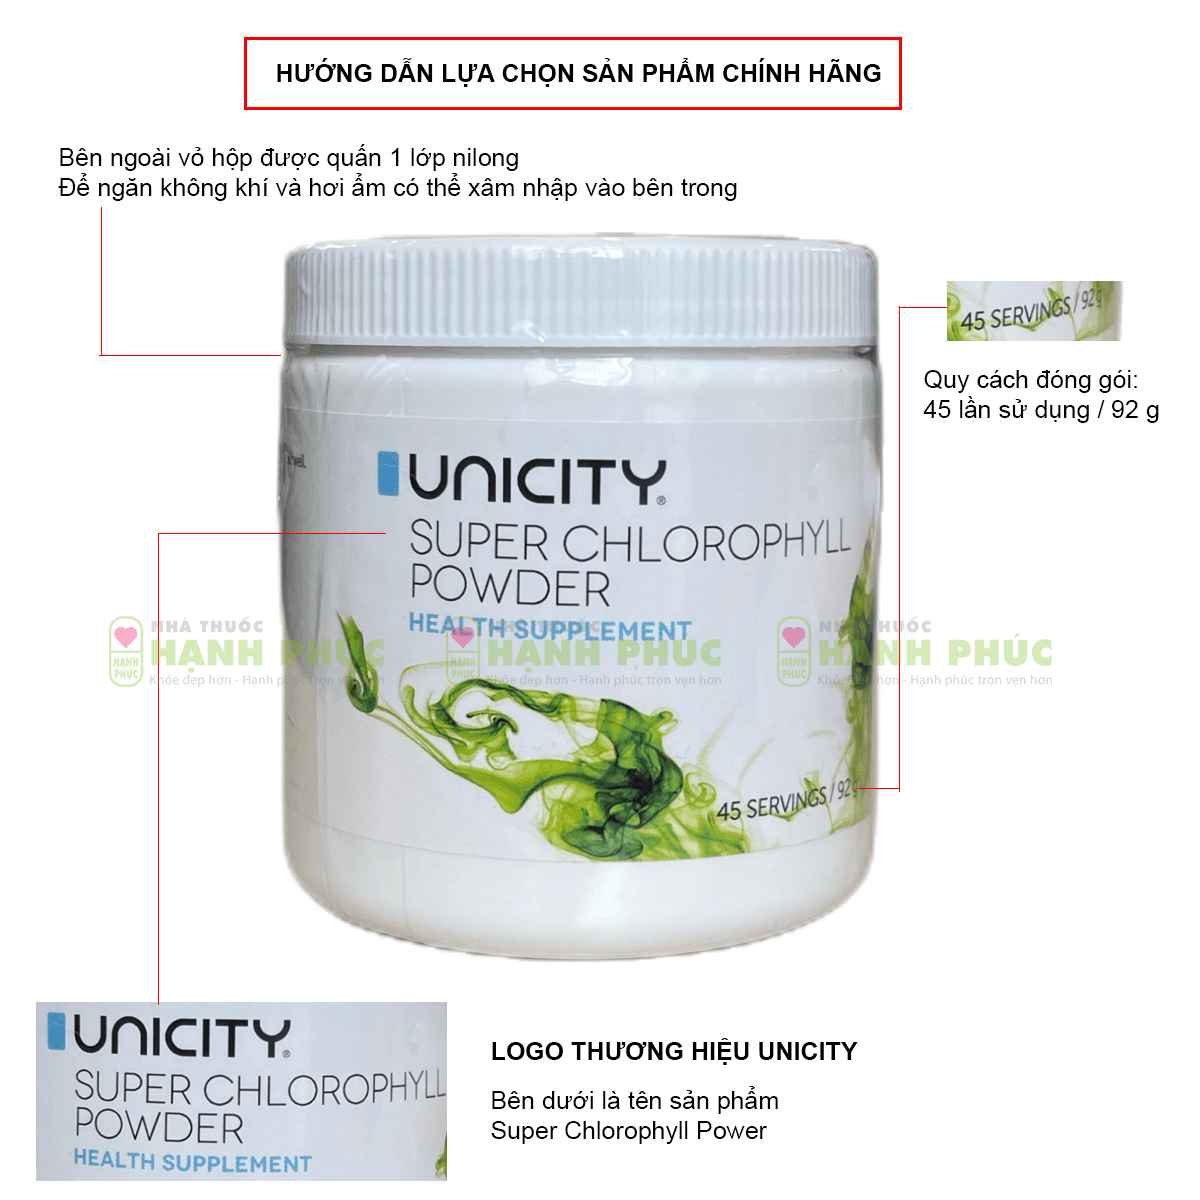 Hướng dẫn lựa lựa chọn thành phầm bột diệp lục Unicity Super Chlorophyll Powder đích thị 